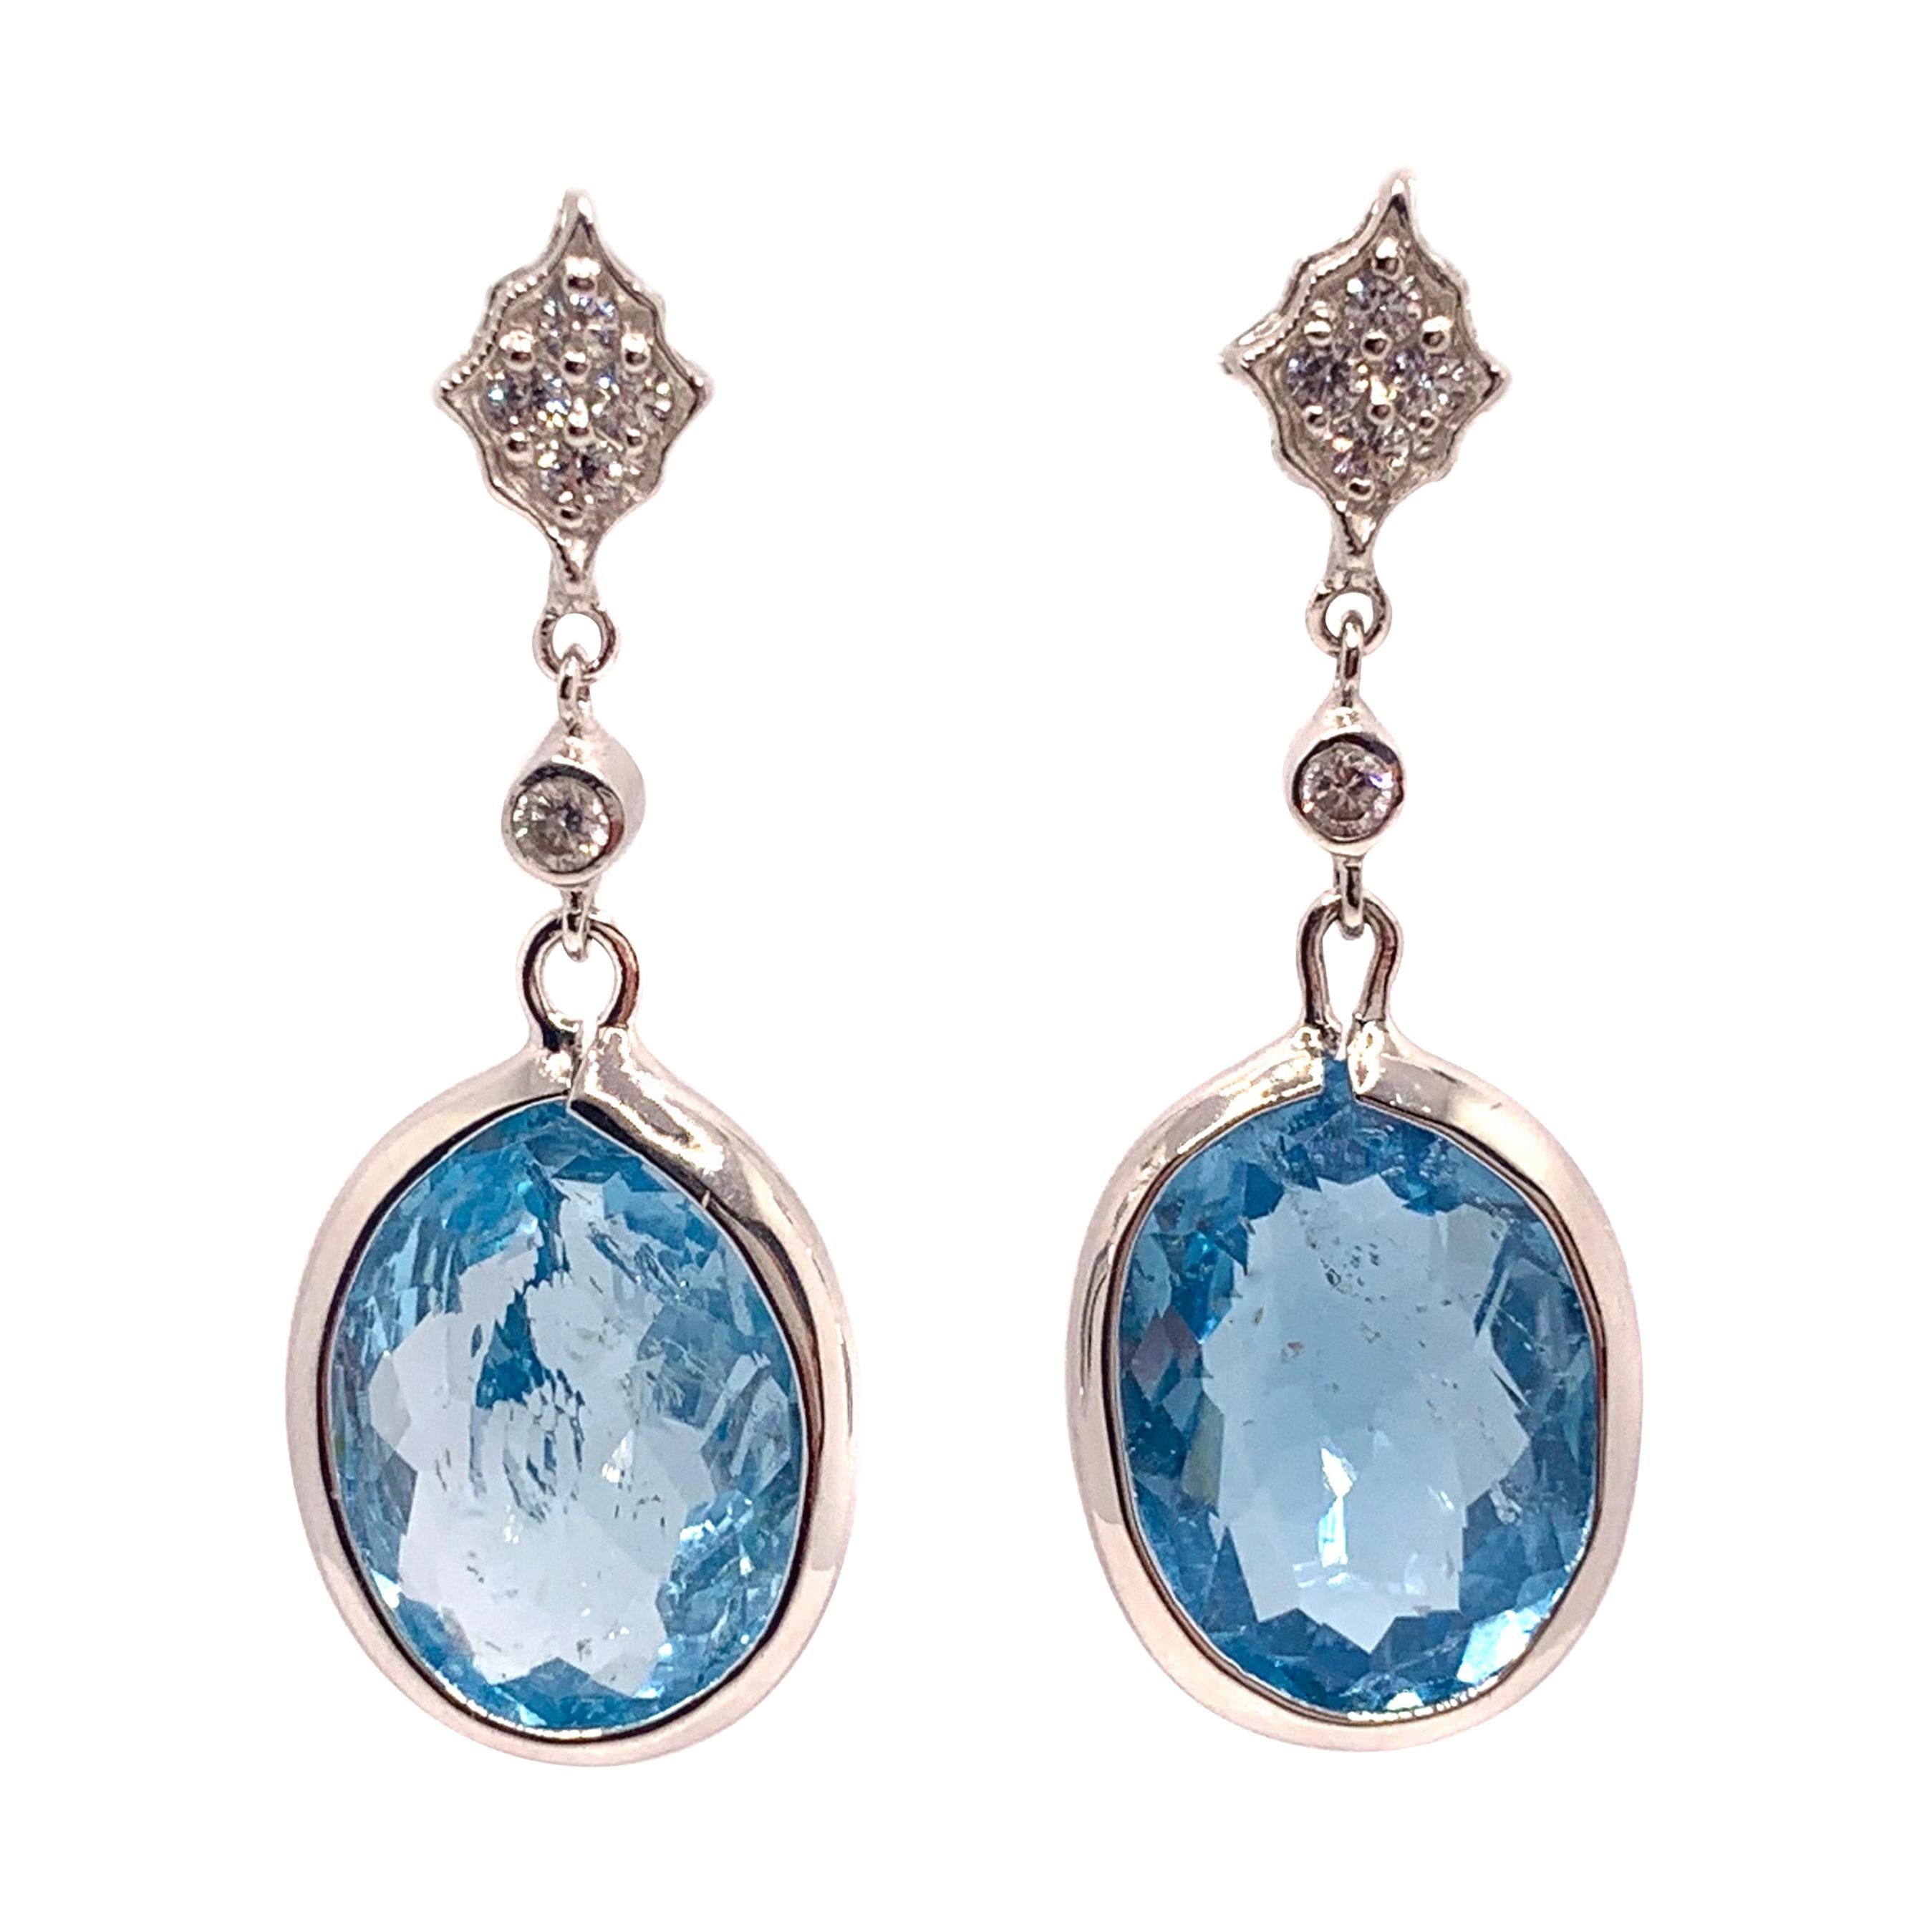 Stunning pair of 37ct Genuine Blue Topaz Drop  Earrings